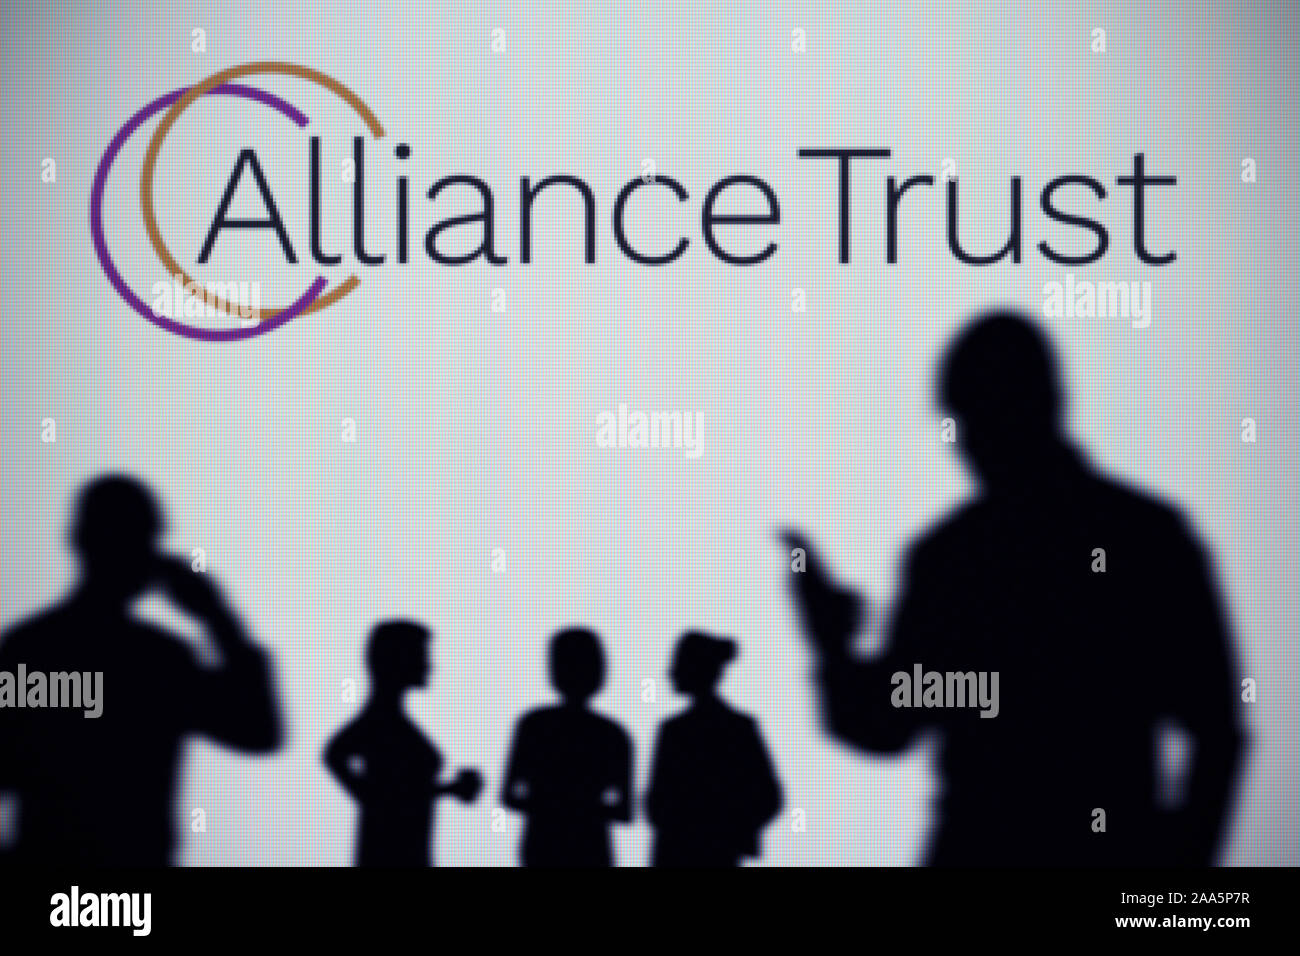 L'Alliance Trust logo est visible sur un écran LED à l'arrière-plan tandis qu'une silhouette personne utilise un smartphone (usage éditorial uniquement) Banque D'Images